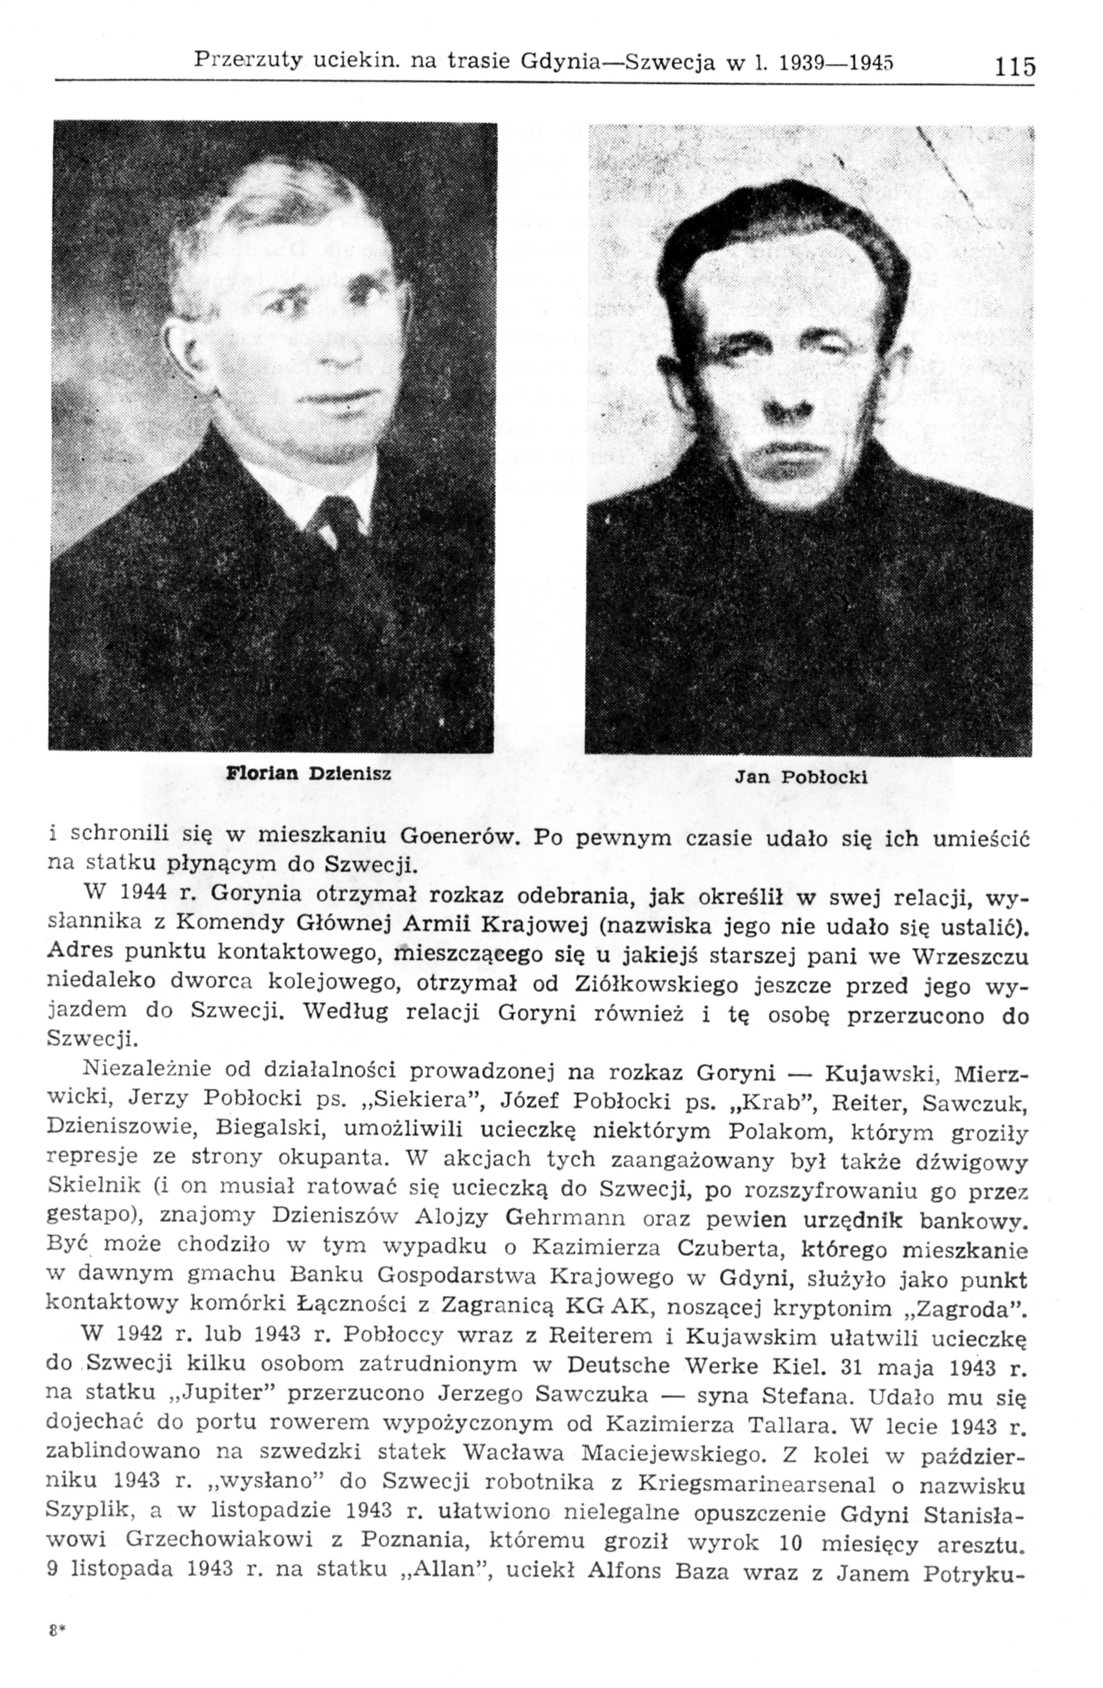 Przerzuty uciekinierów na trasie Gdynia - Szwecja w latach 1939-1945